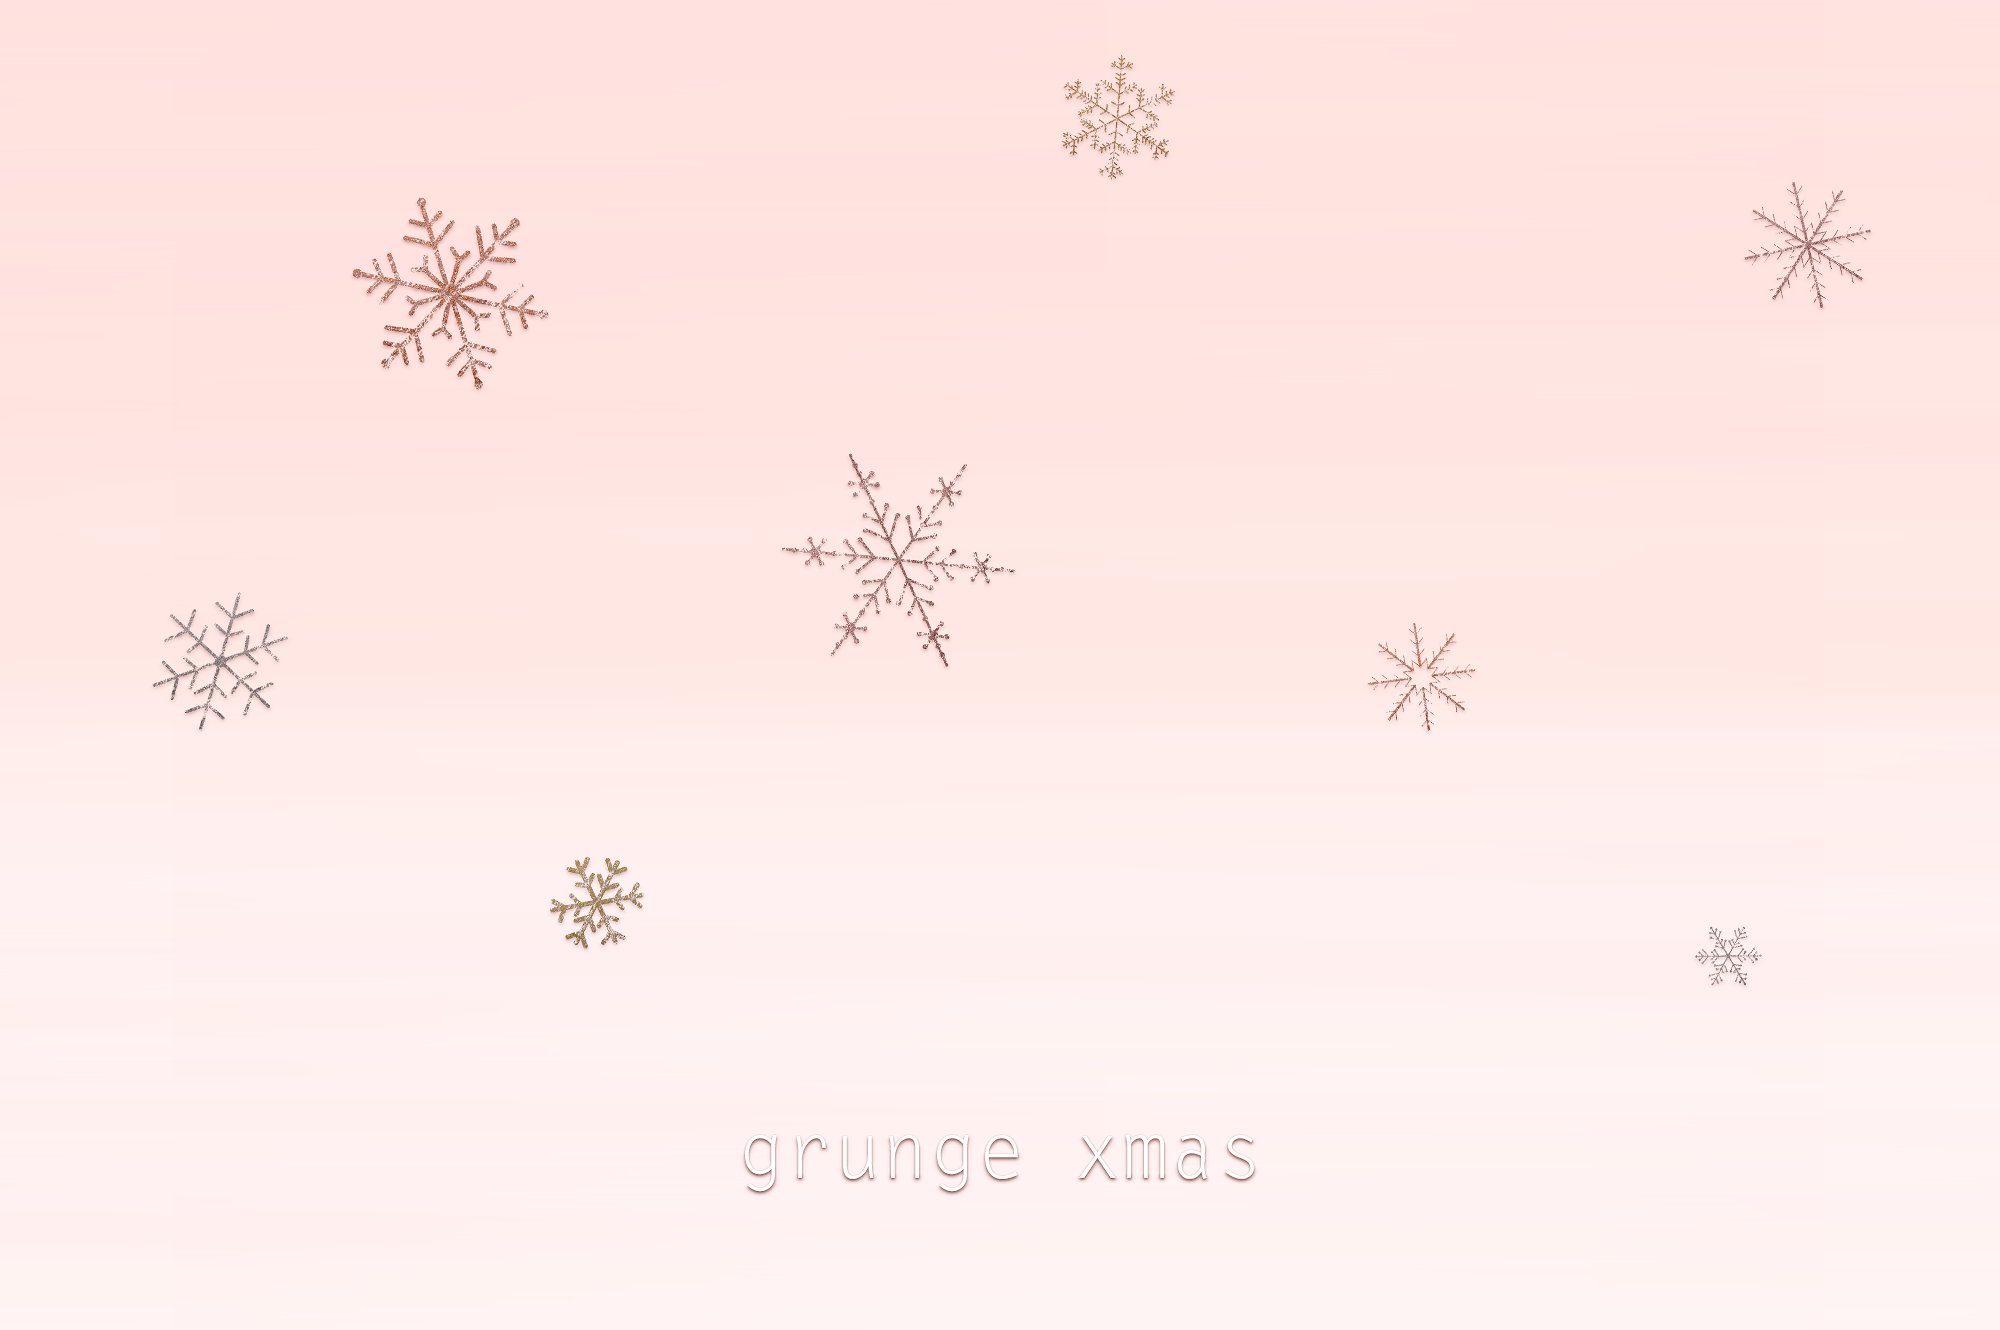 圣诞节金箔雪花素材 XMAS Grunge Snowflak